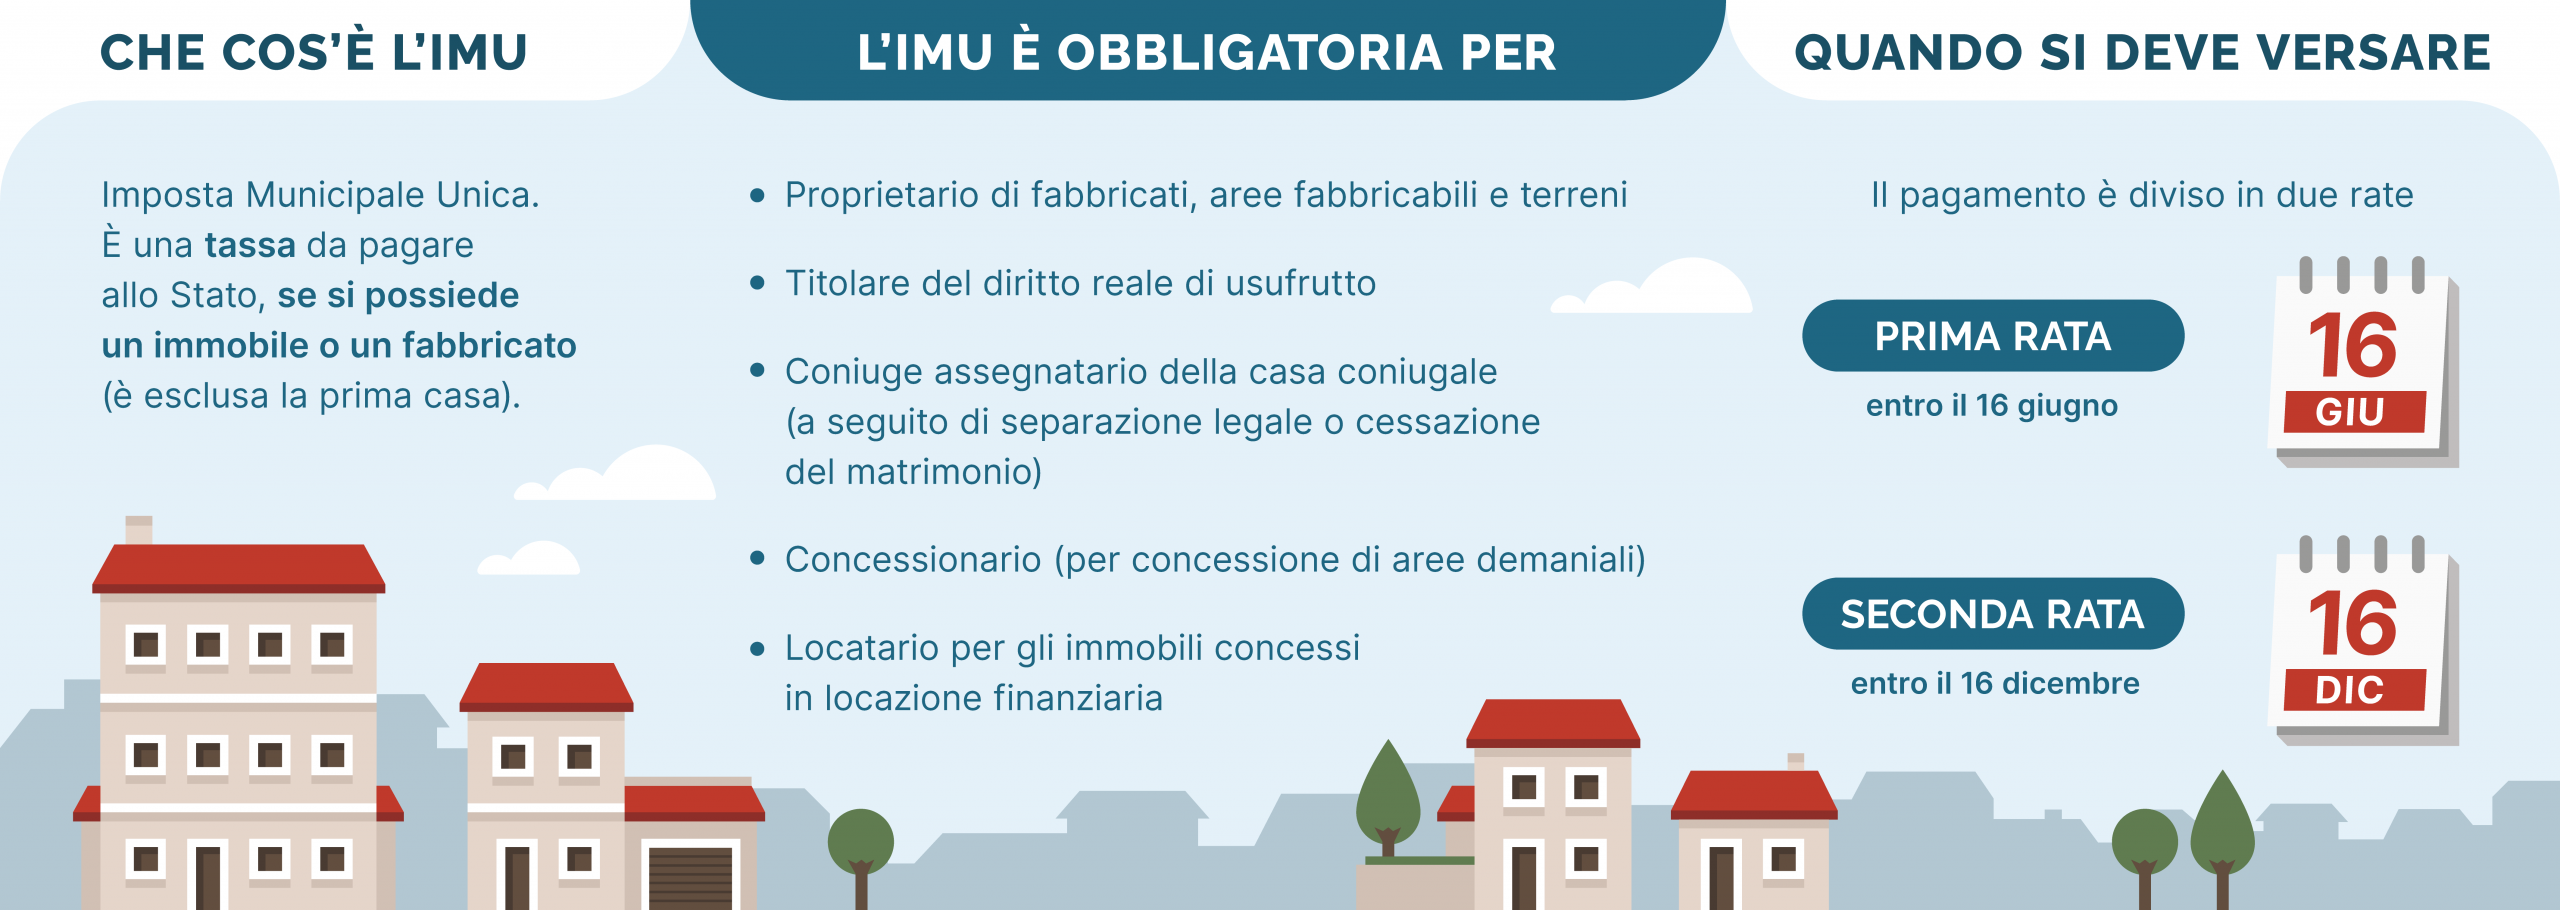 IMU: Imposta Municipale Unica - Immobiliare.it